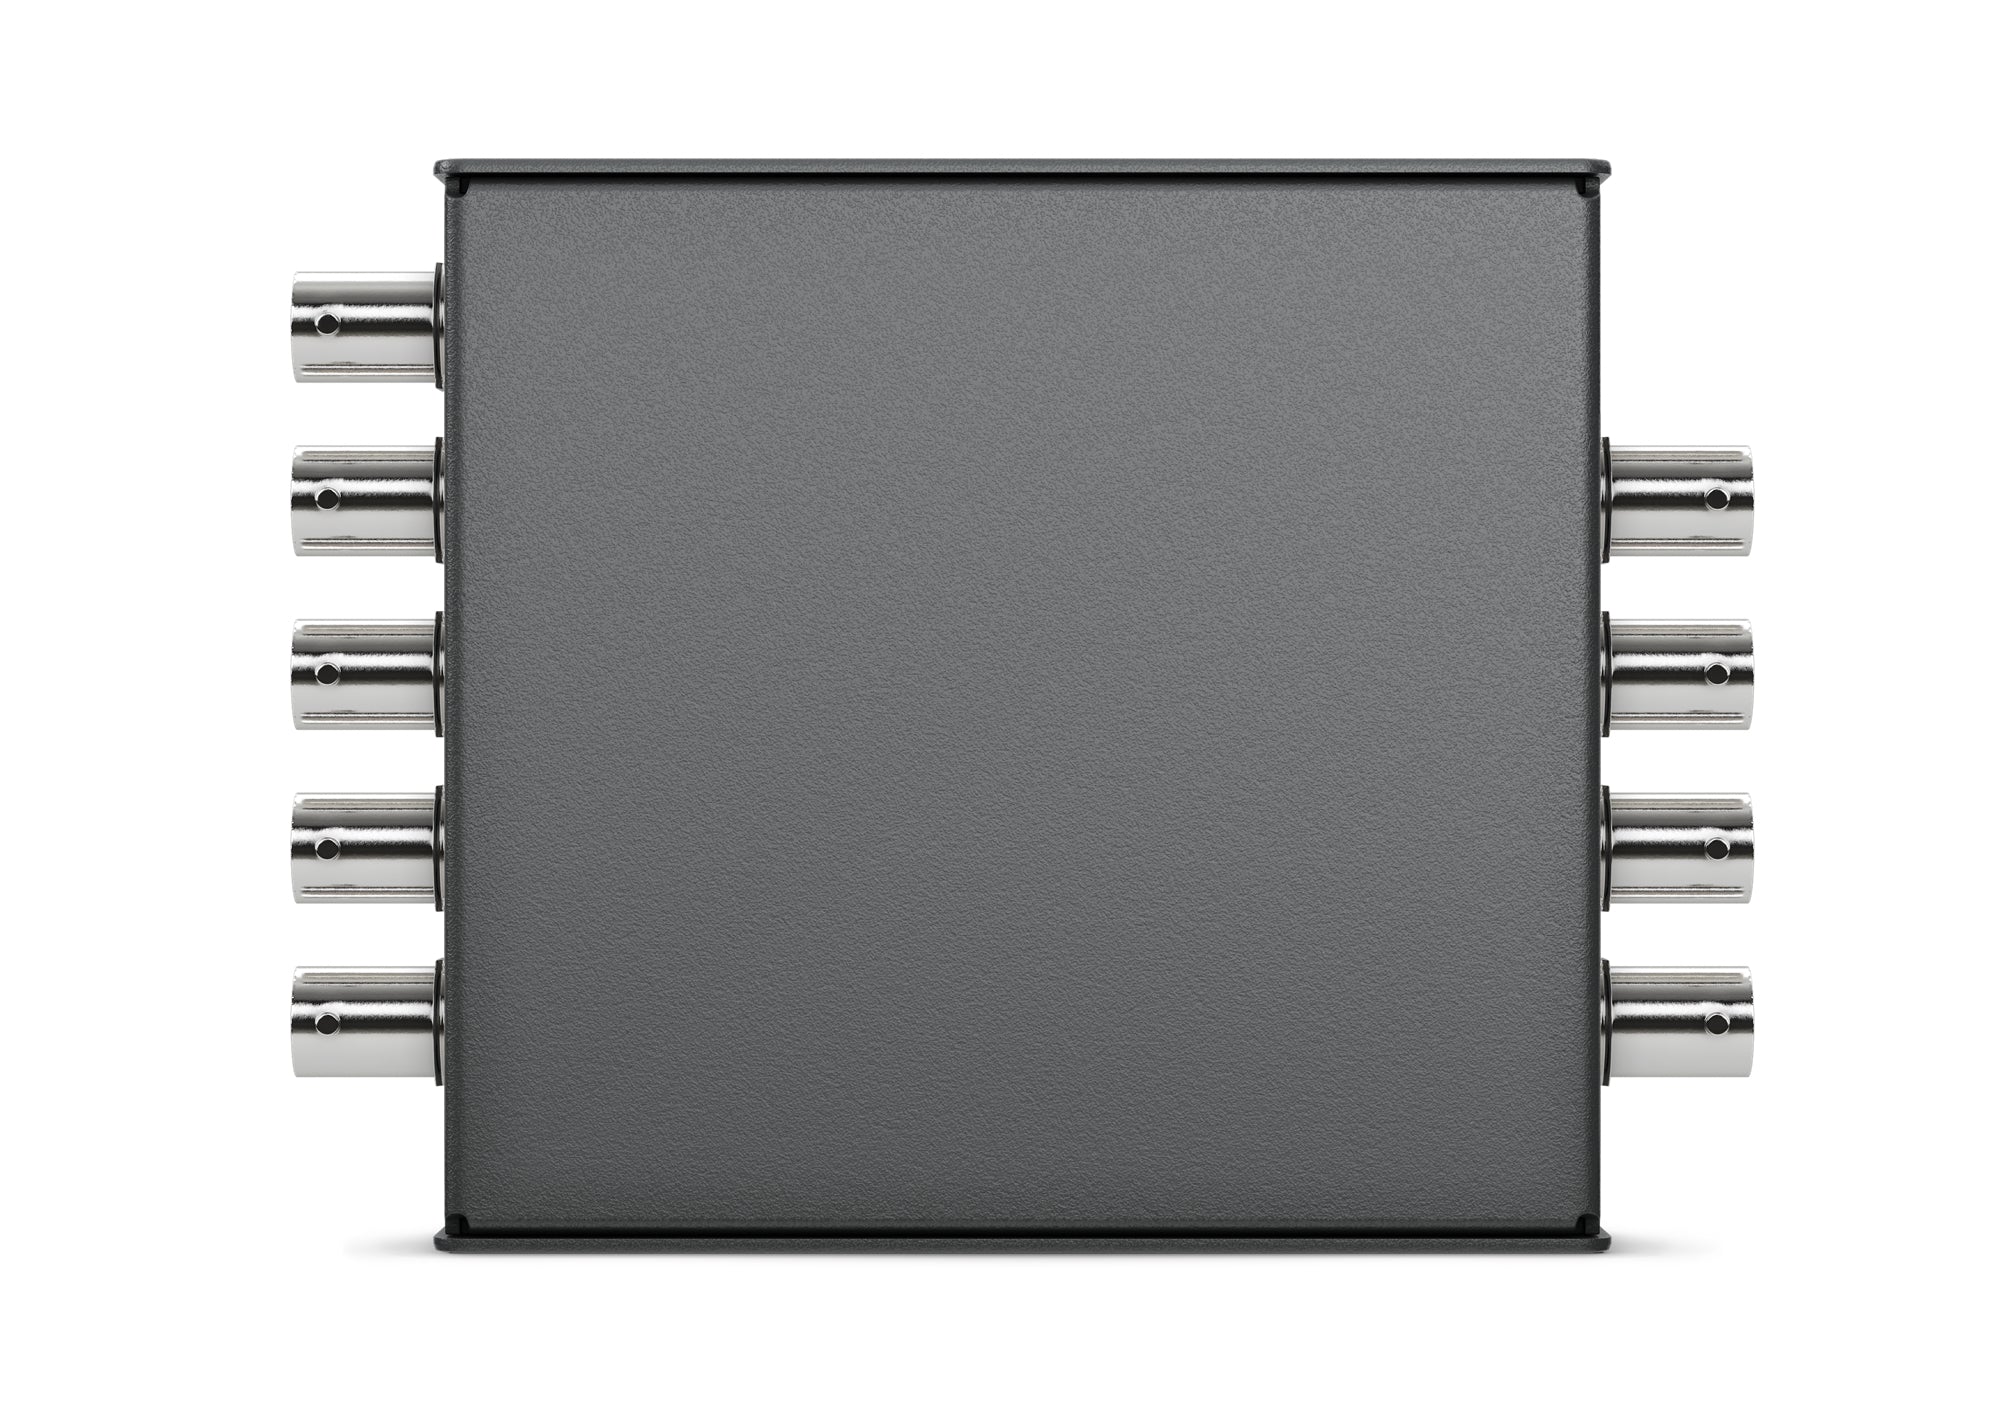 Blackmagic Design Mini Converter - SDI Distribution 4K